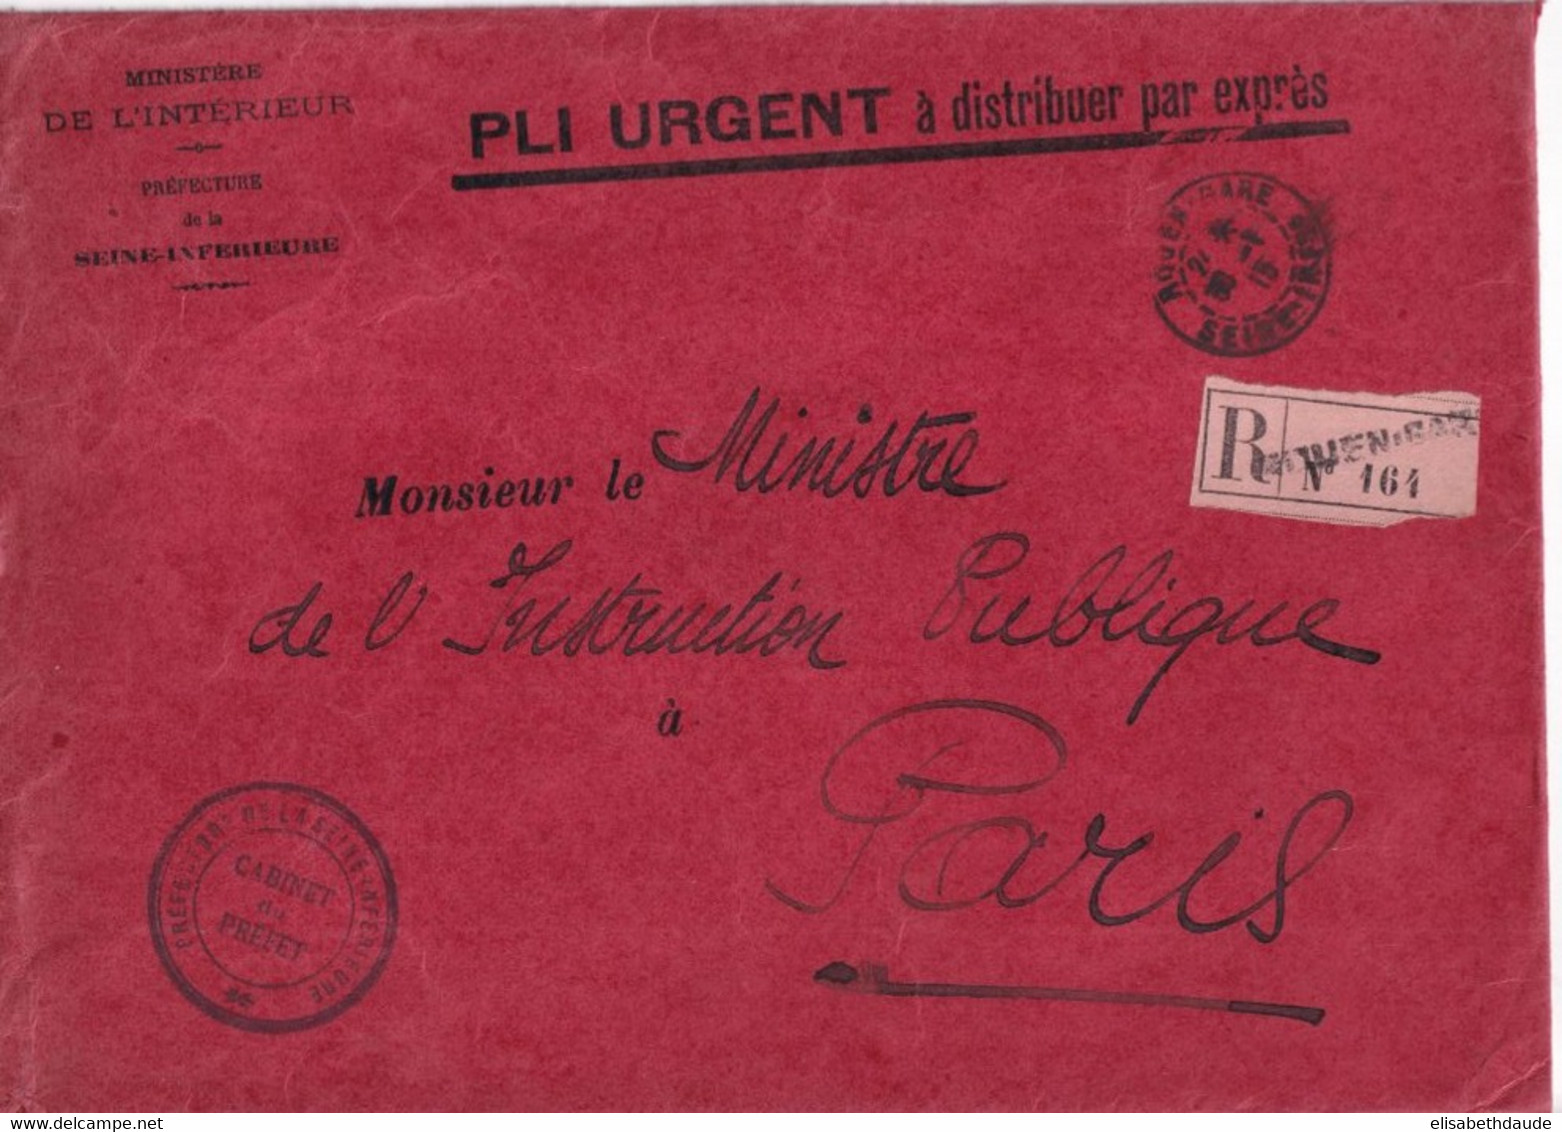 1915 - SEINE INFERIEURE - ENVELOPPE GF EXPRES ! RECOMMANDEE En FRANCHISE De La PREFECTURE à ROUEN => MINISTRE INTRUCTION - Frankobriefe